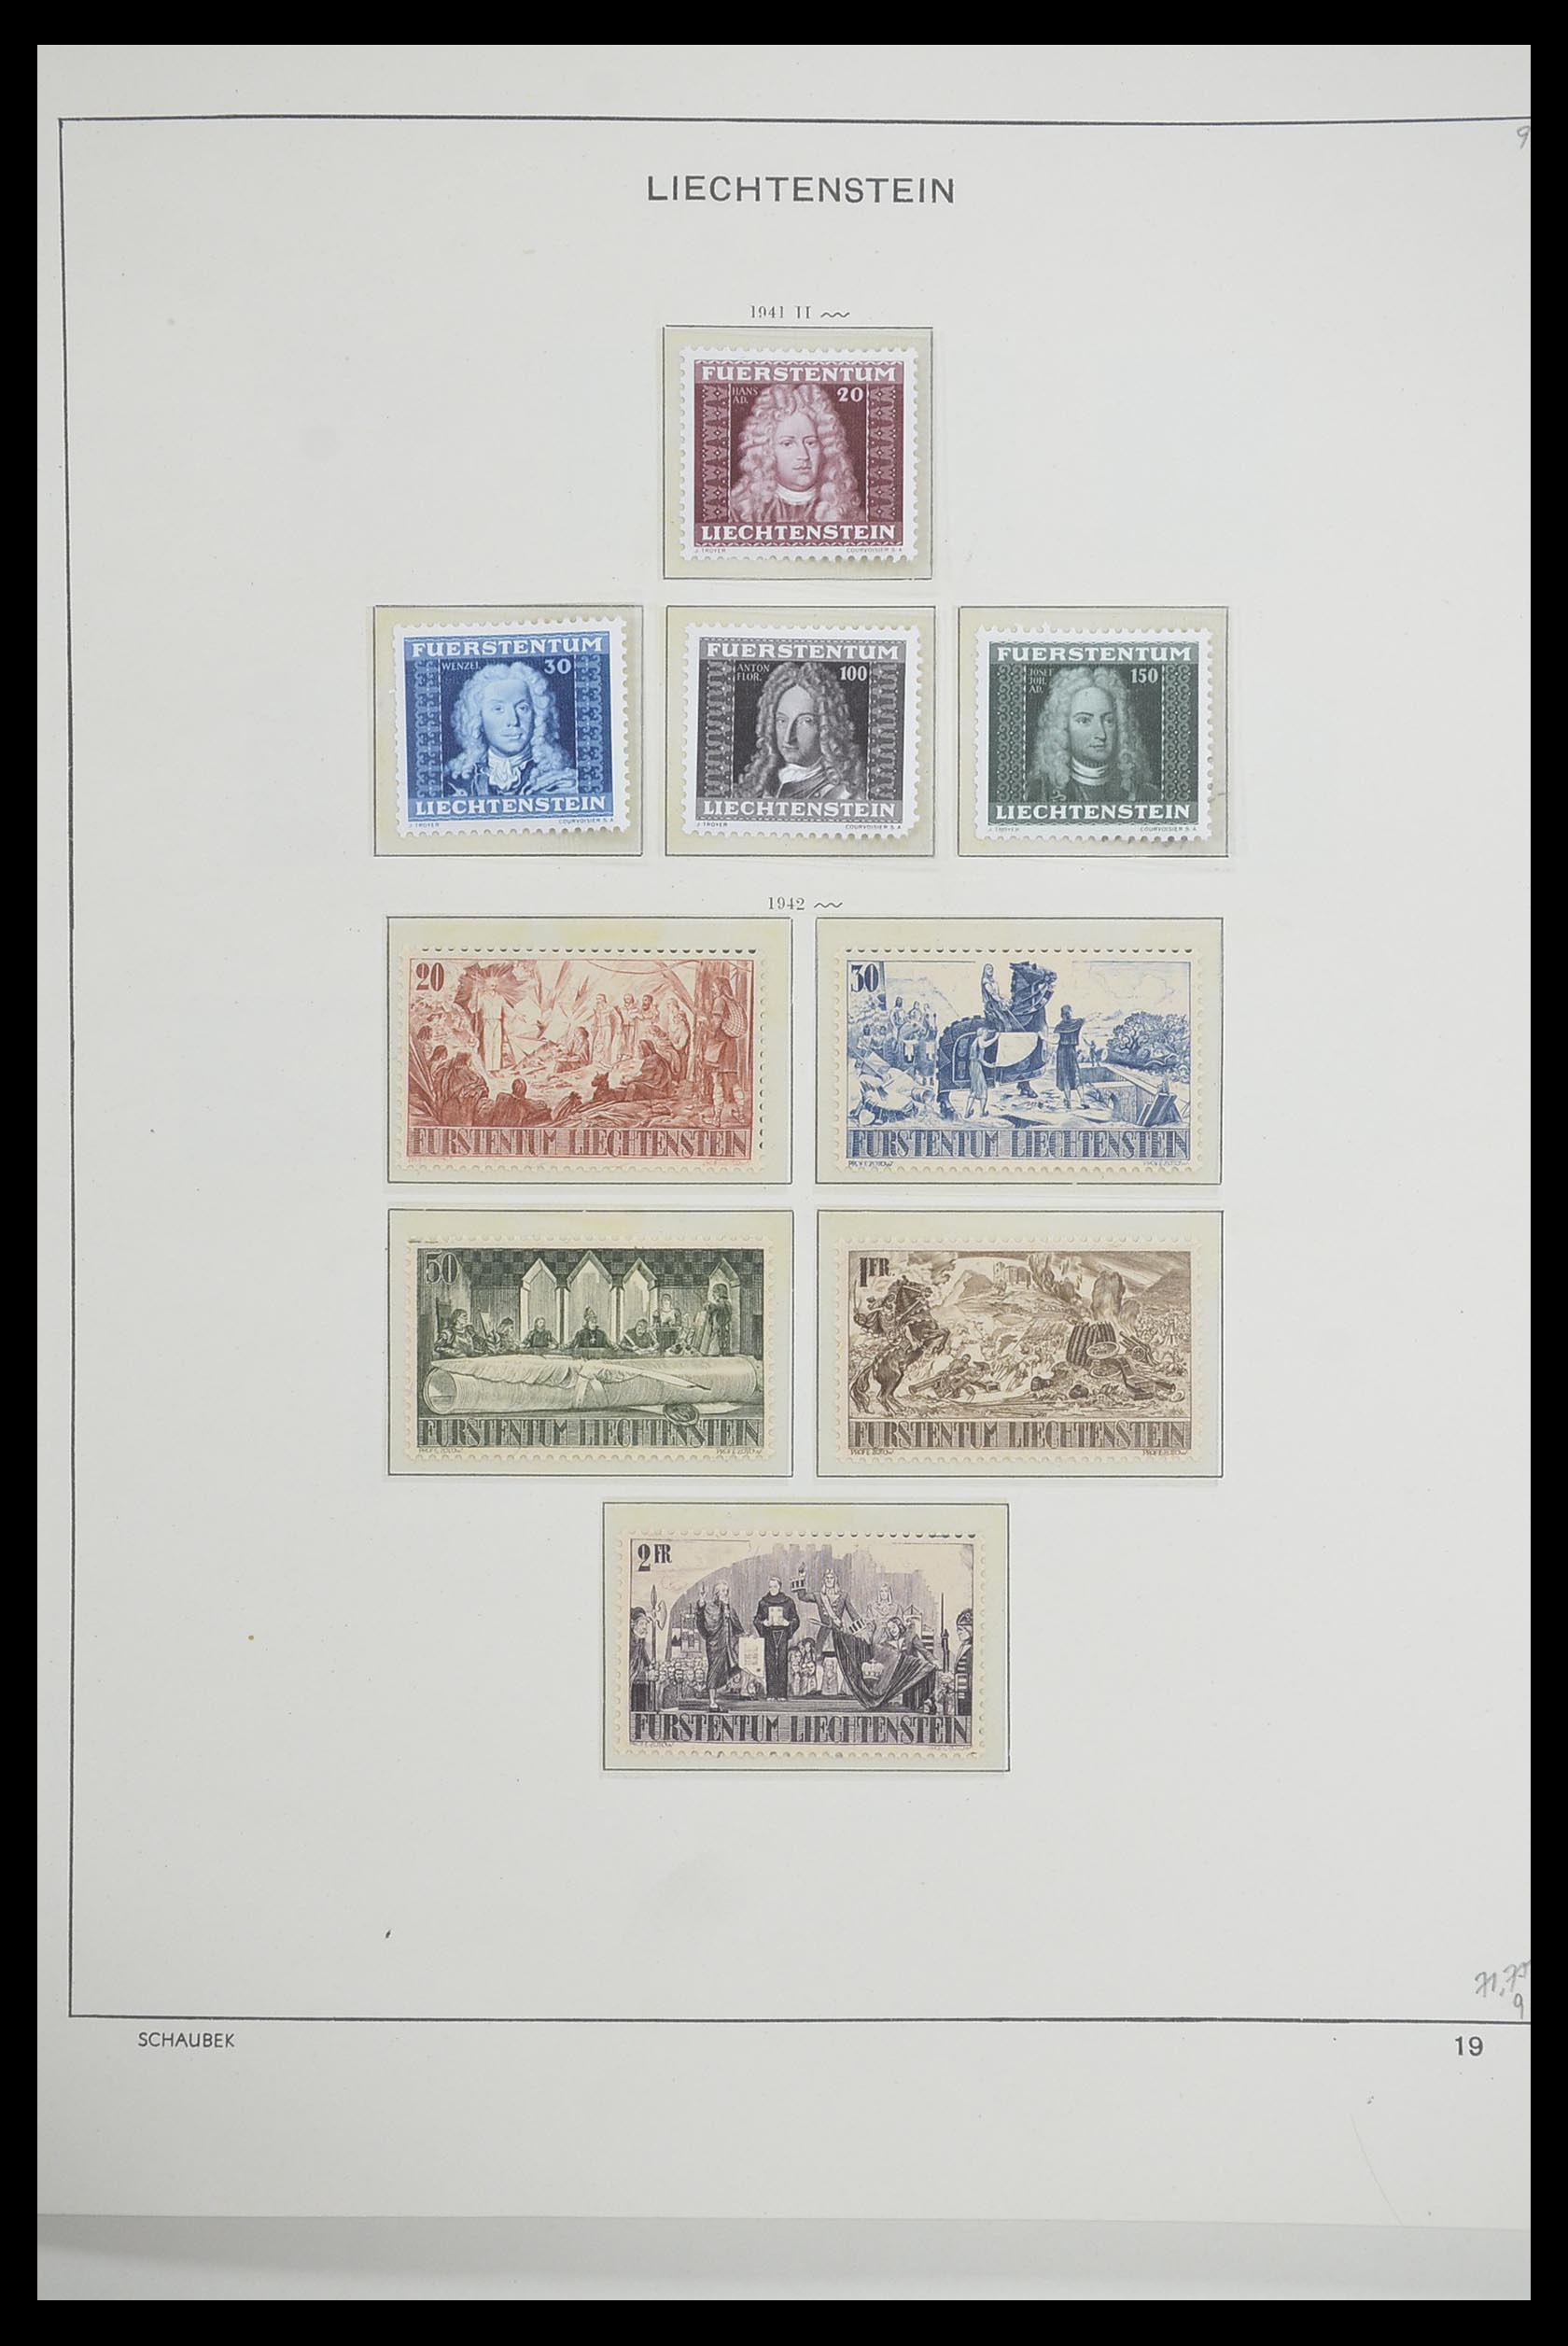 33274 017 - Stamp collection 33274 Liechtenstein 1912-1996.